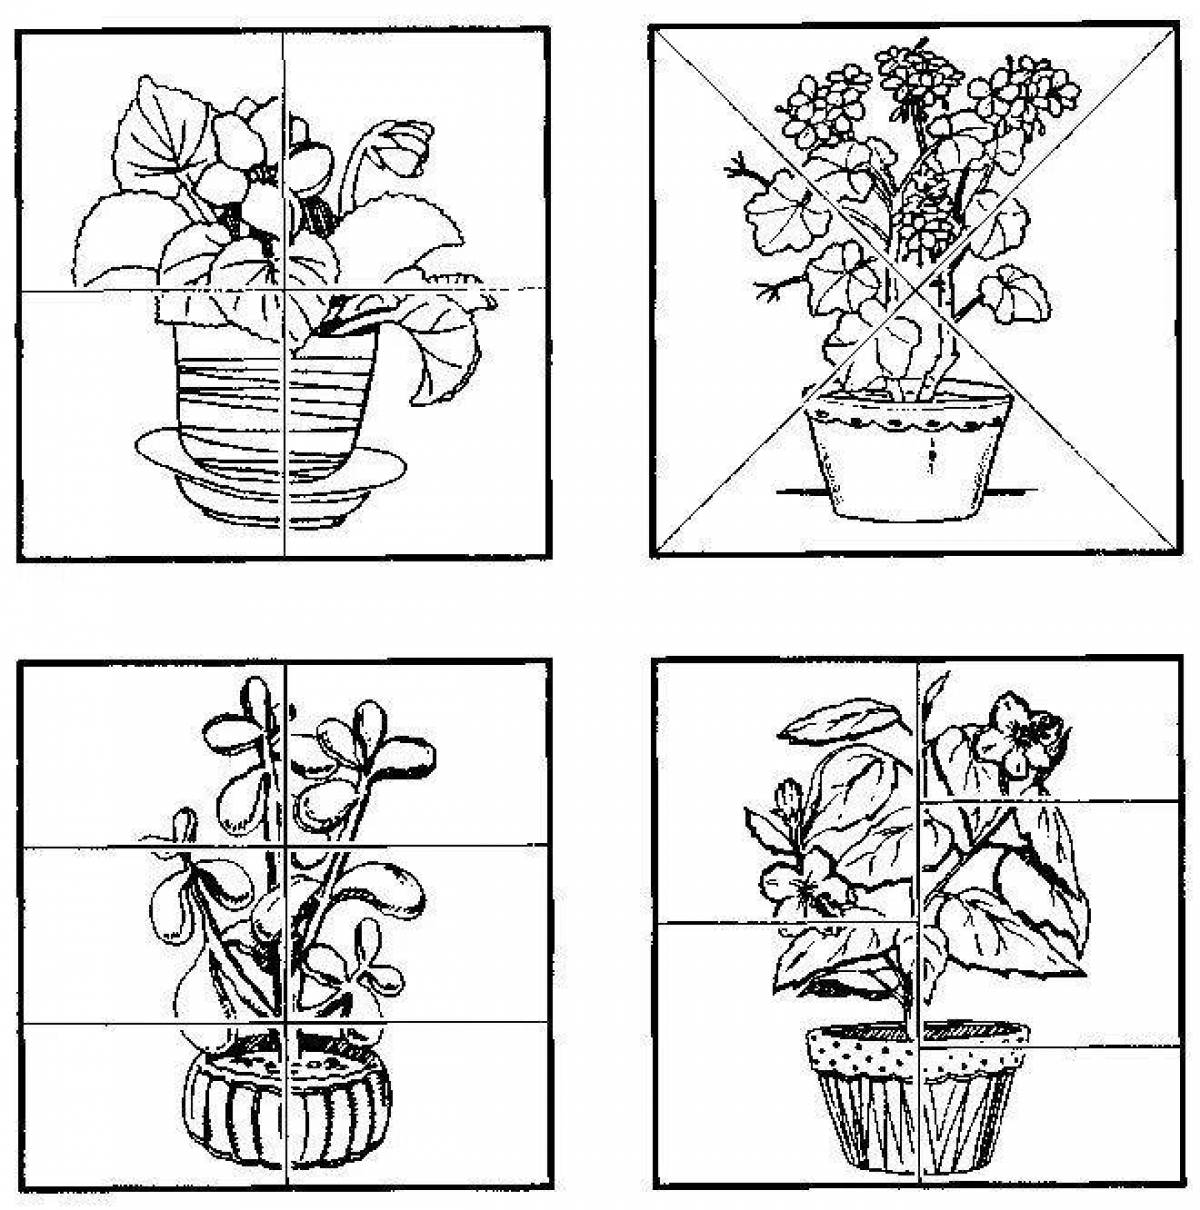 Карточки комнатные растения